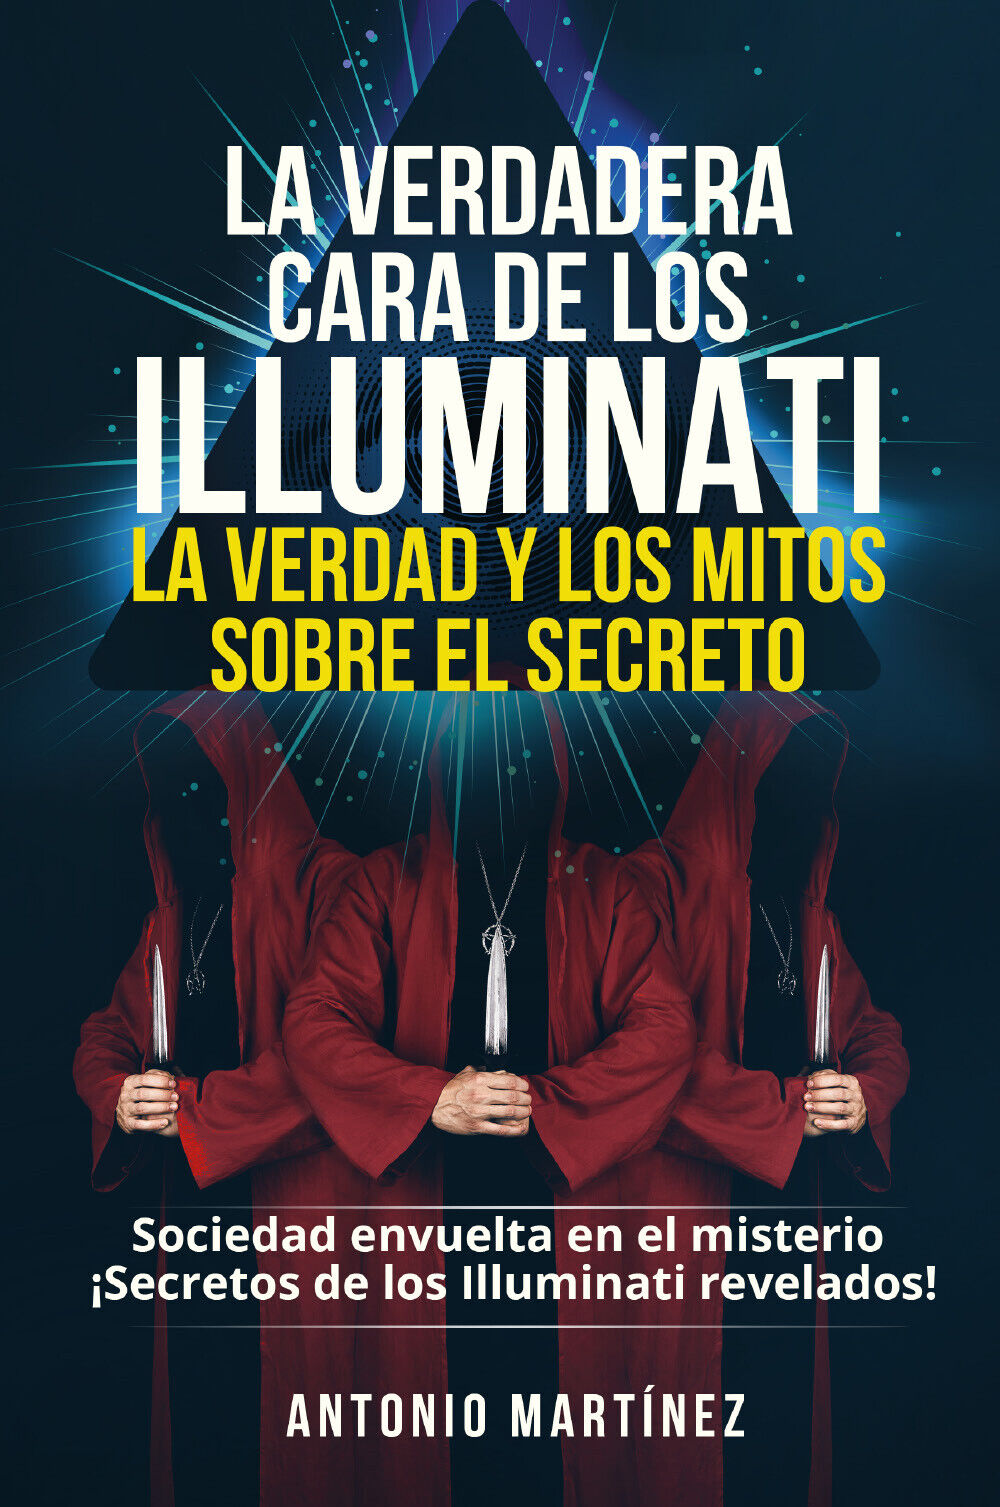 La verdadera cara de los illuminati: la verdad y los mitos sobre el secreto. Soc